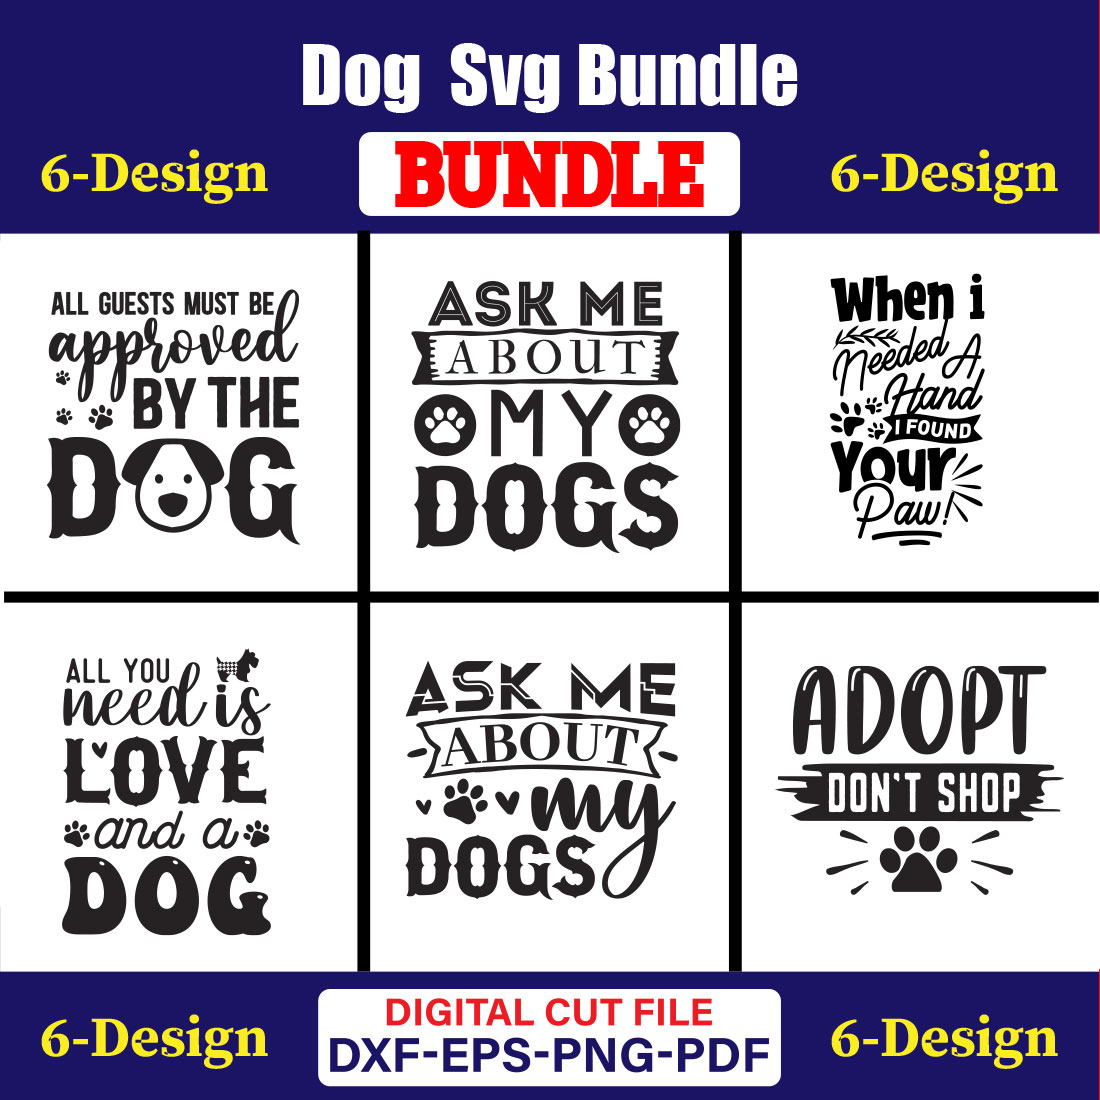 Dog SVG T-shirt Design Bundle Vol-24 cover image.